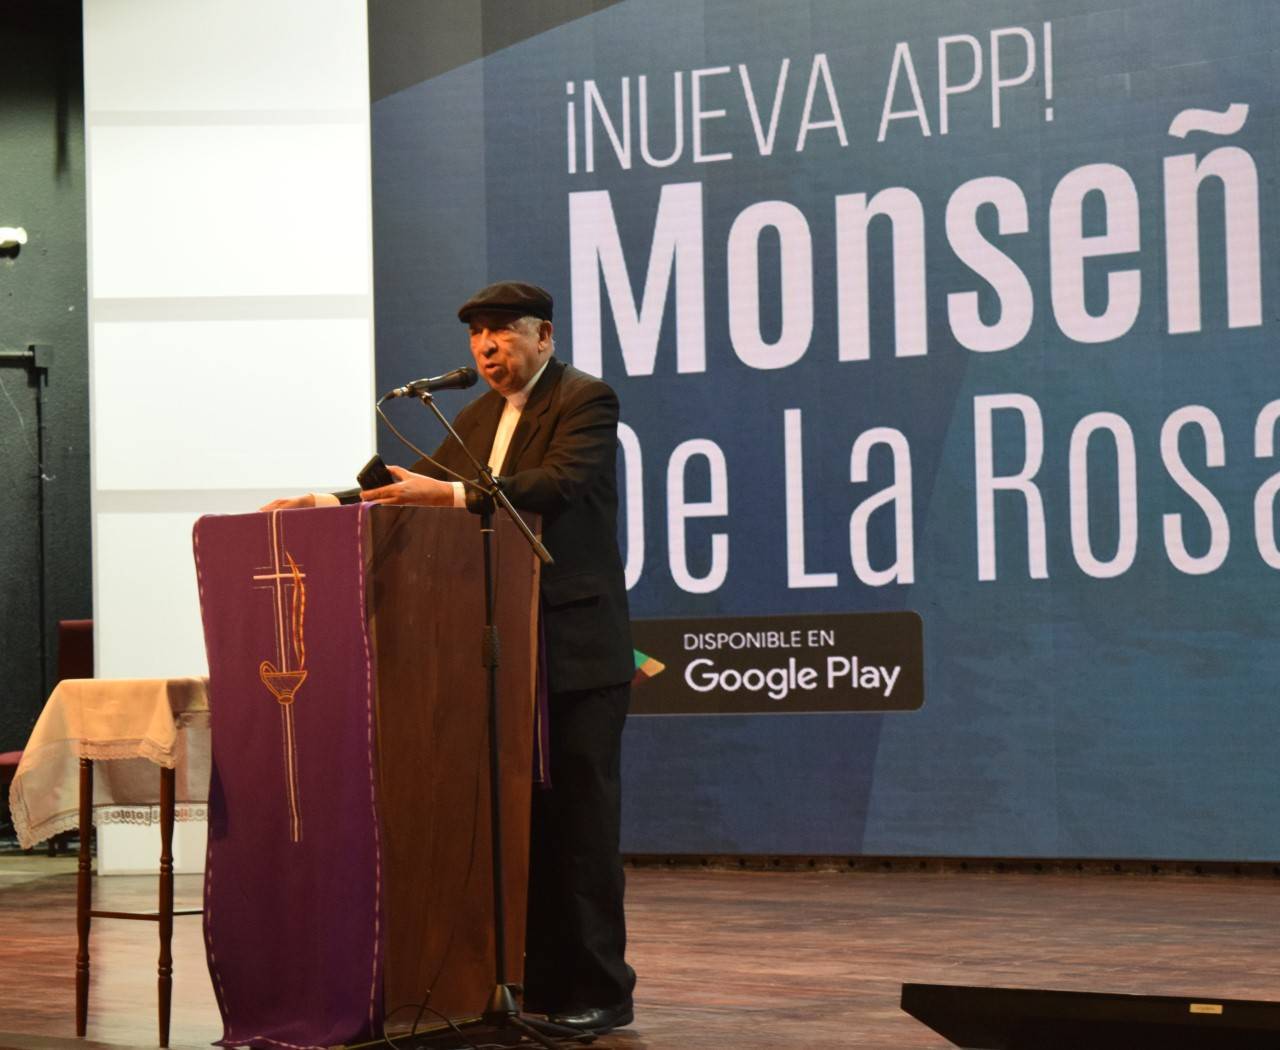 Monseñor De la Rosa y Carpio anuncia el lanzamiento de su aplicación móvil